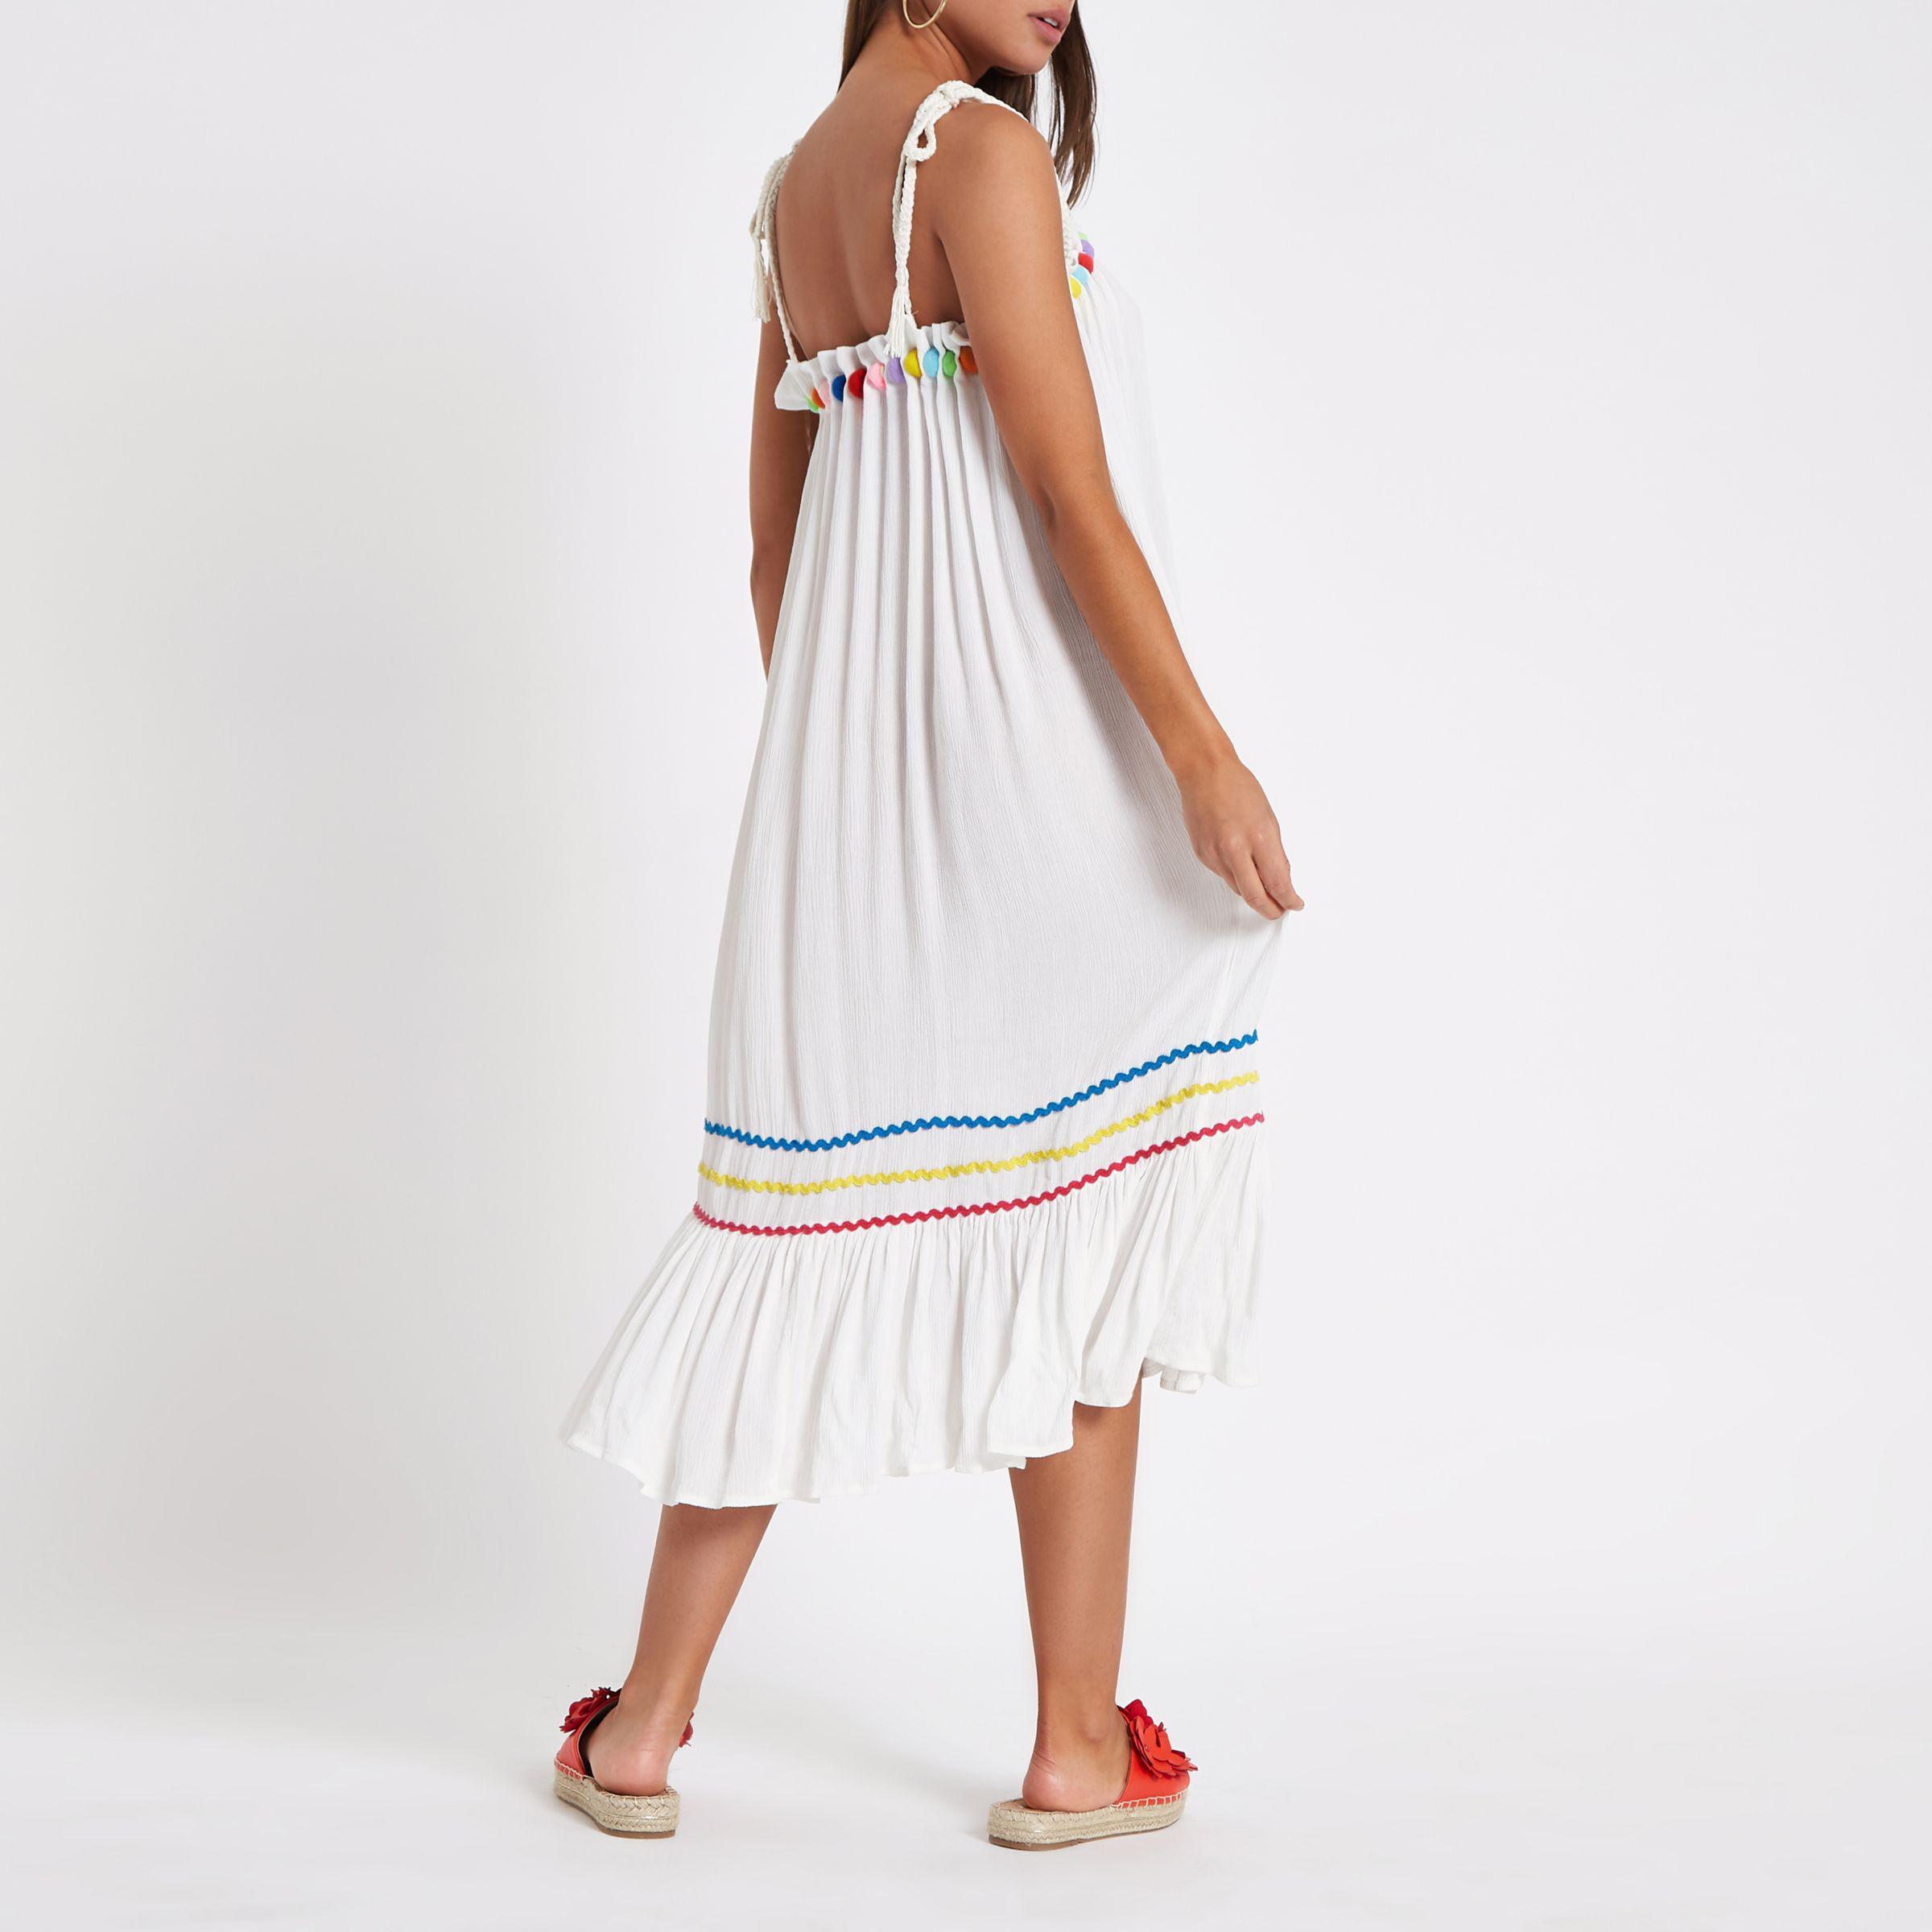 Buy > white midi beach dress > in stock